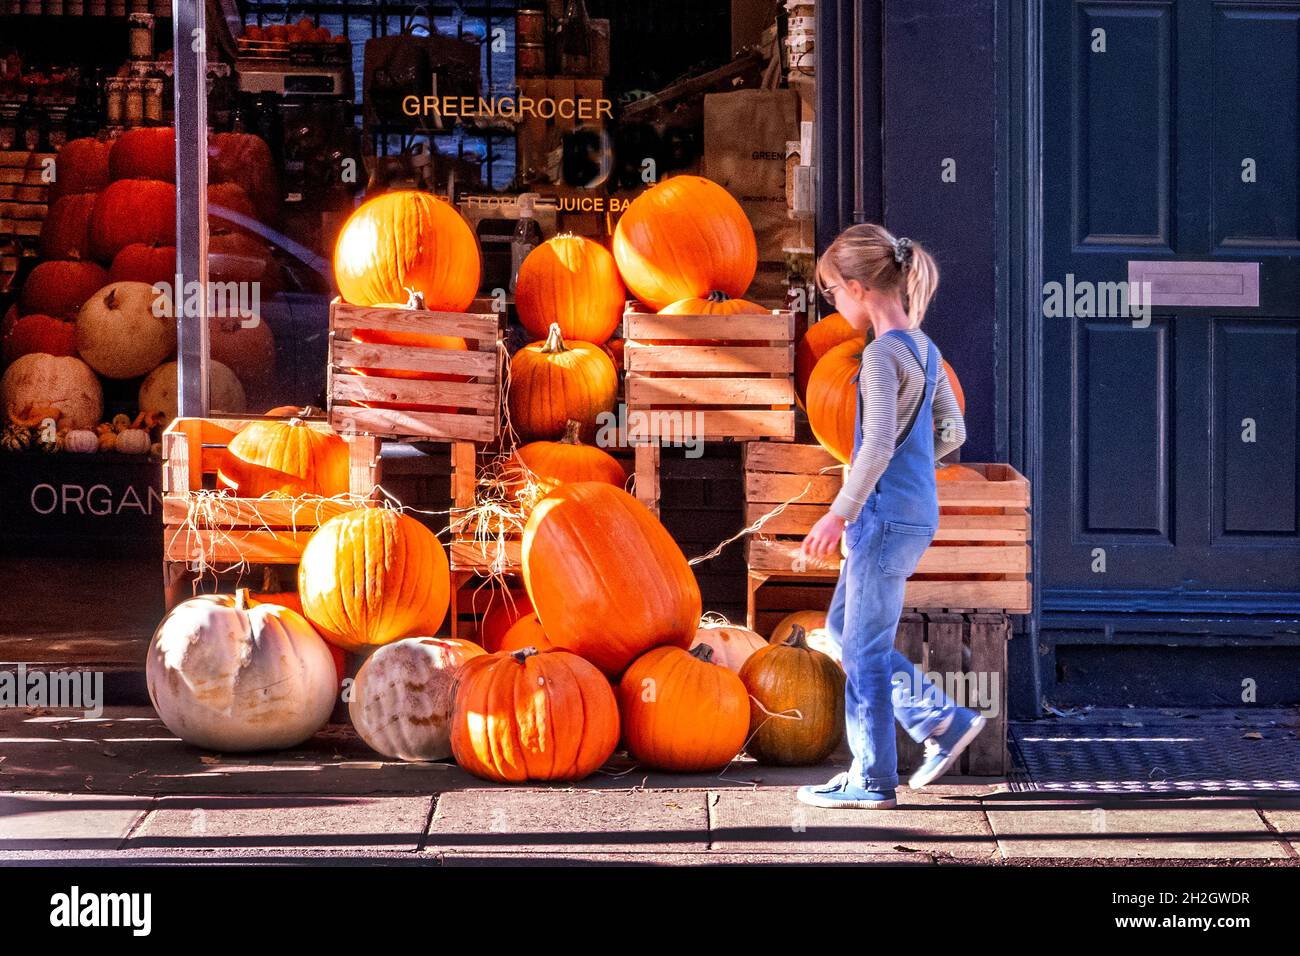 Junge Person, die in einem Lebensmittelgeschäft im Norden Londons in Großbritannien Kürbisse kauft, um sich auf das Halloween-Festival vorzubereiten Stockfoto